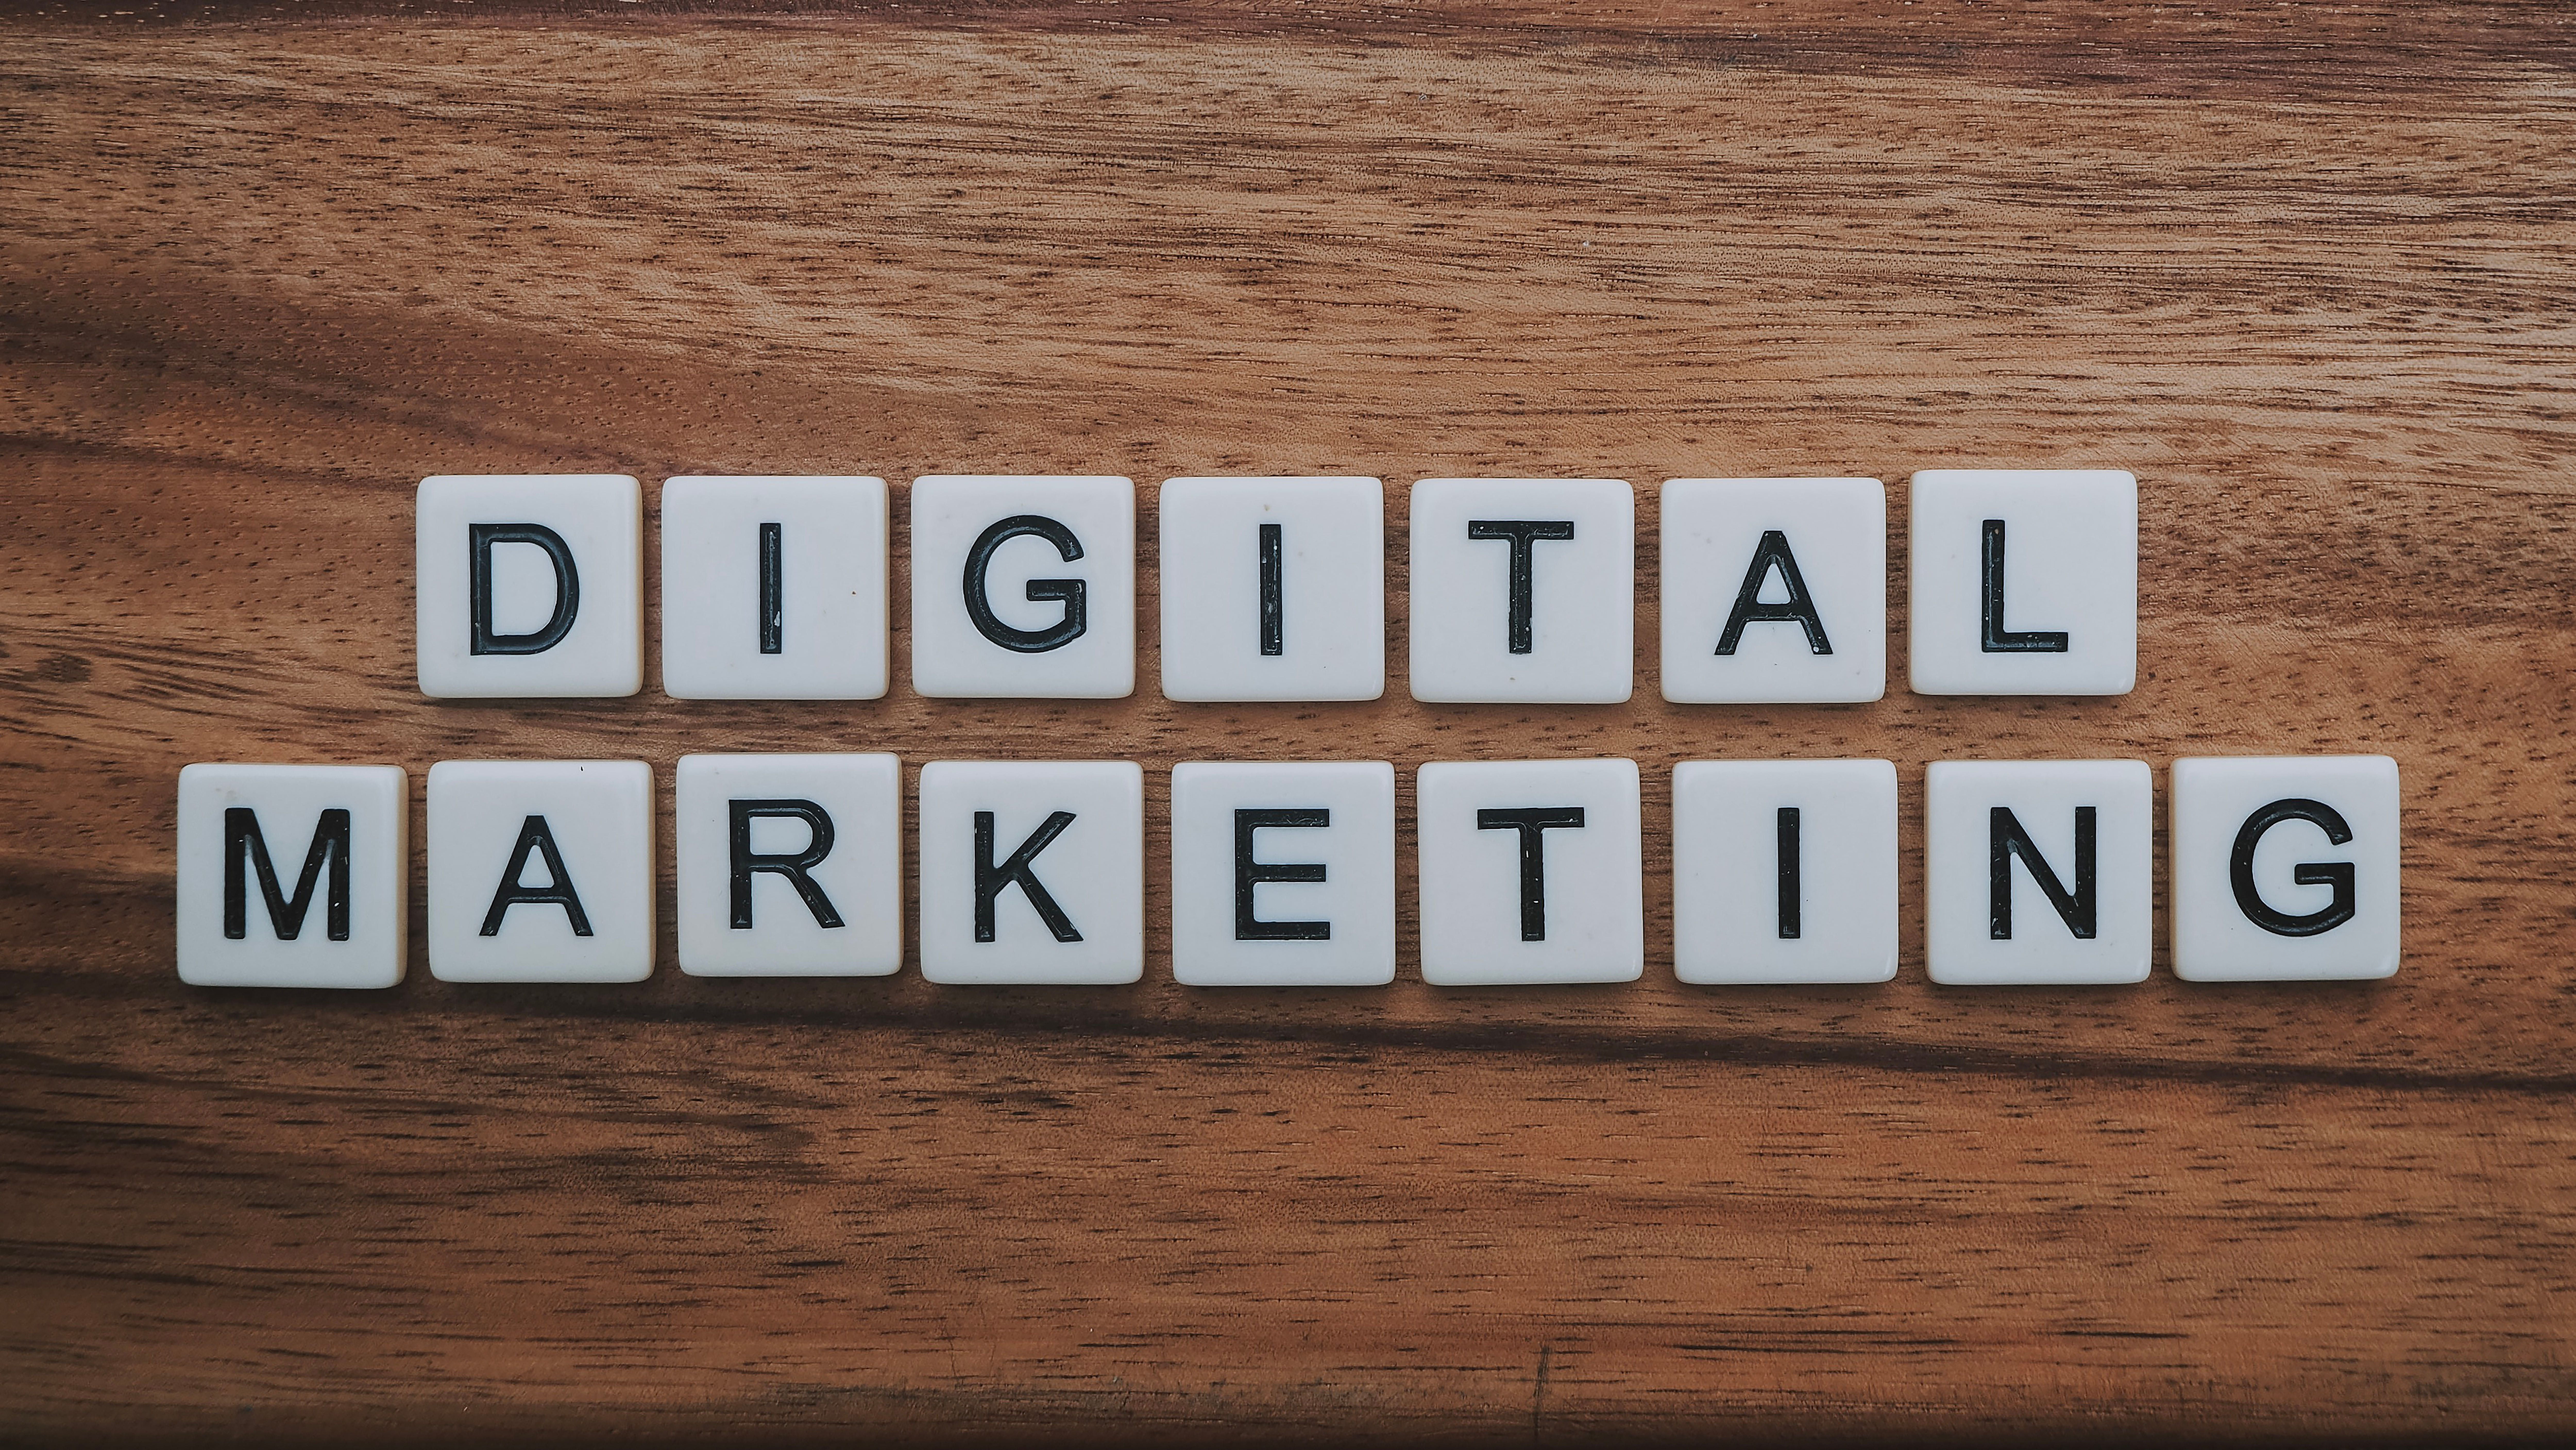 Qu’est ce que le marketing digital ?